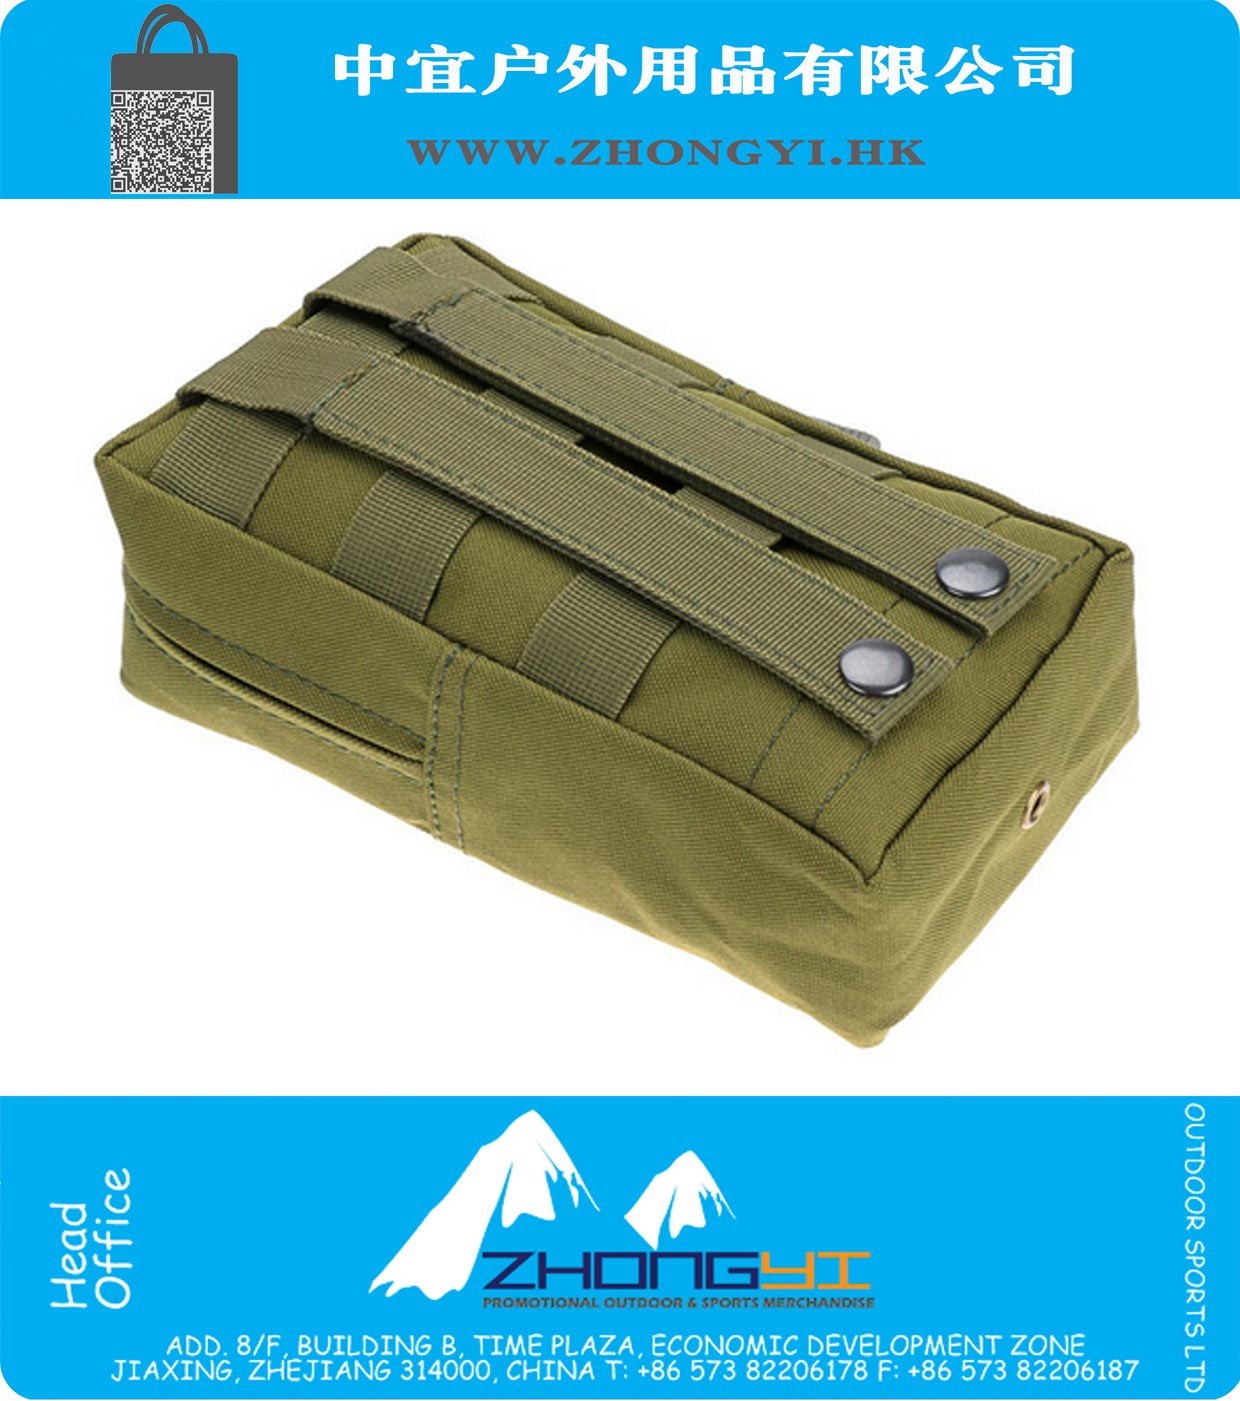 Medic Tool Bag Pack Army green bag